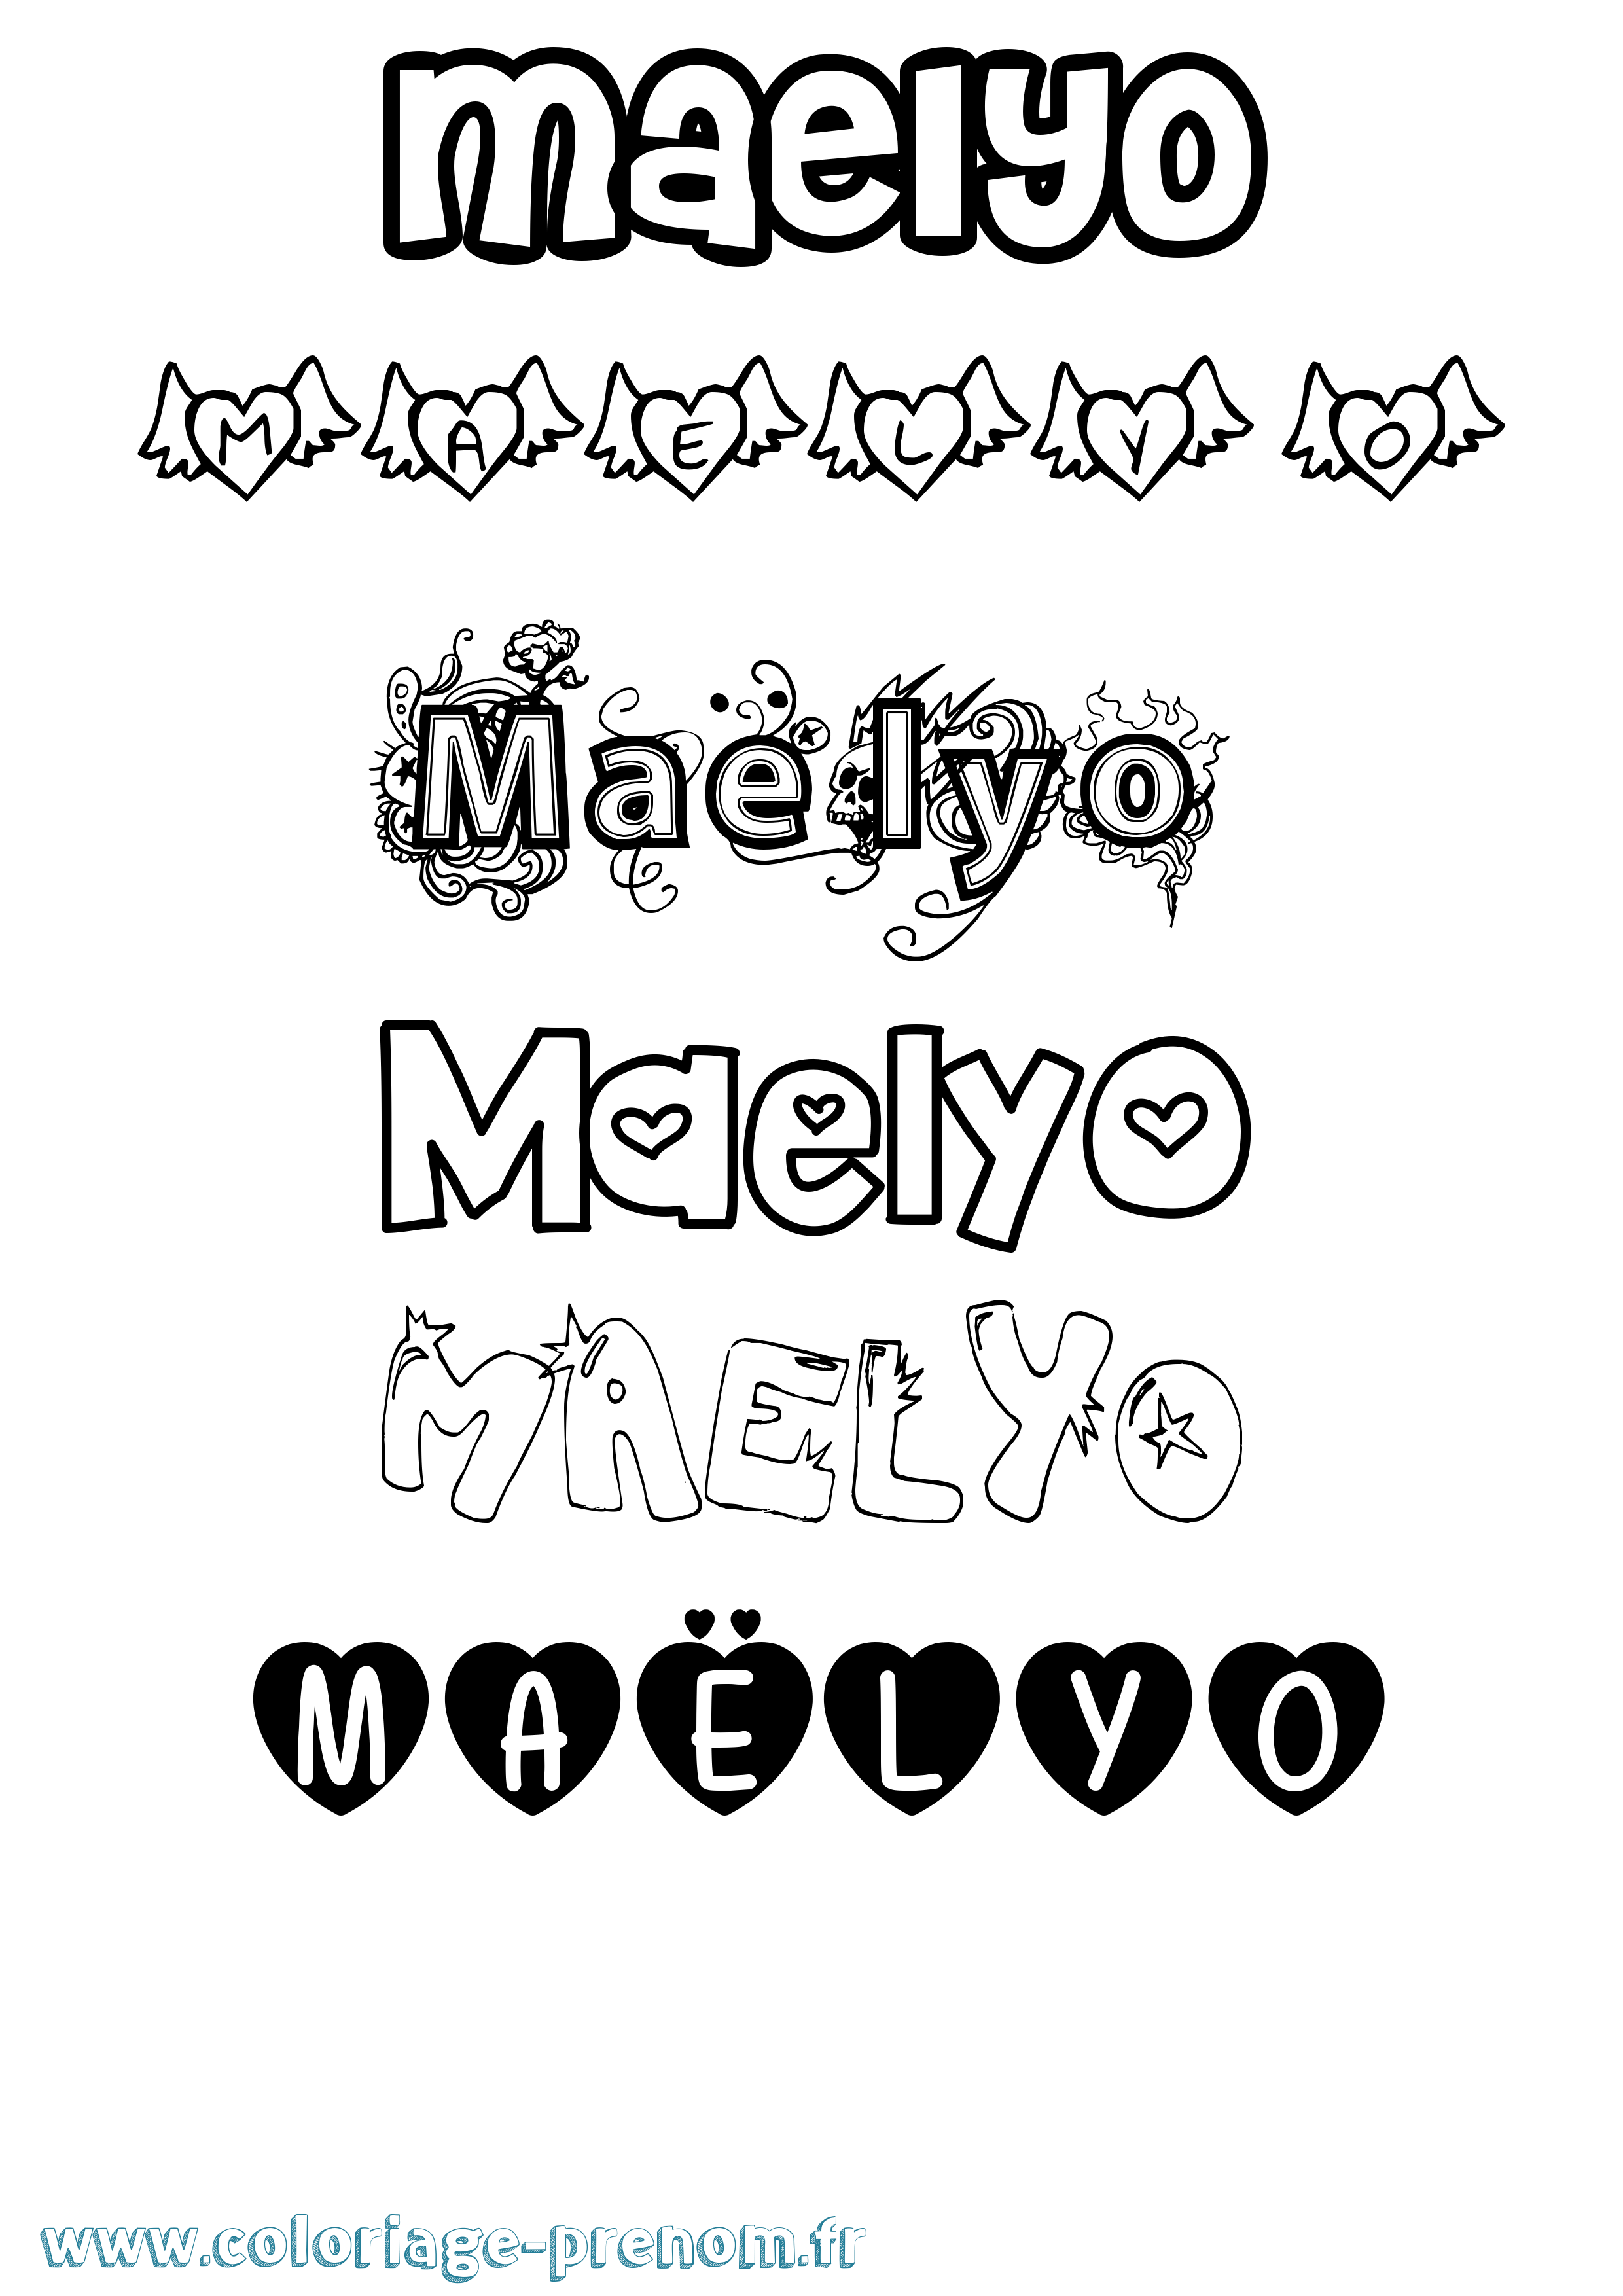 Coloriage prénom Maëlyo Girly